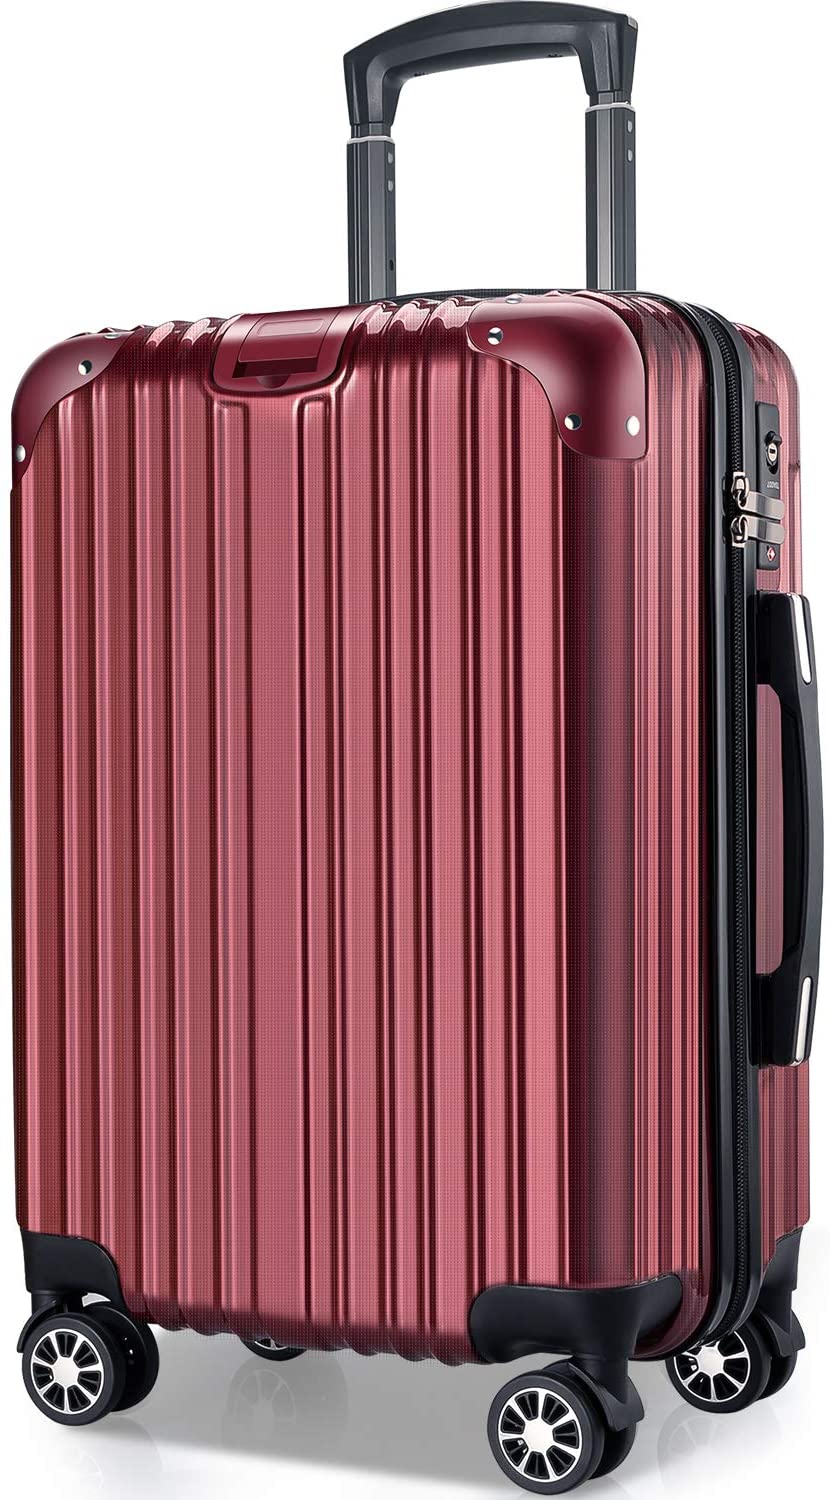 スーツケース 機内持ち込み かわいい 軽量 小型 Sサイズ 2泊3日 TSA 